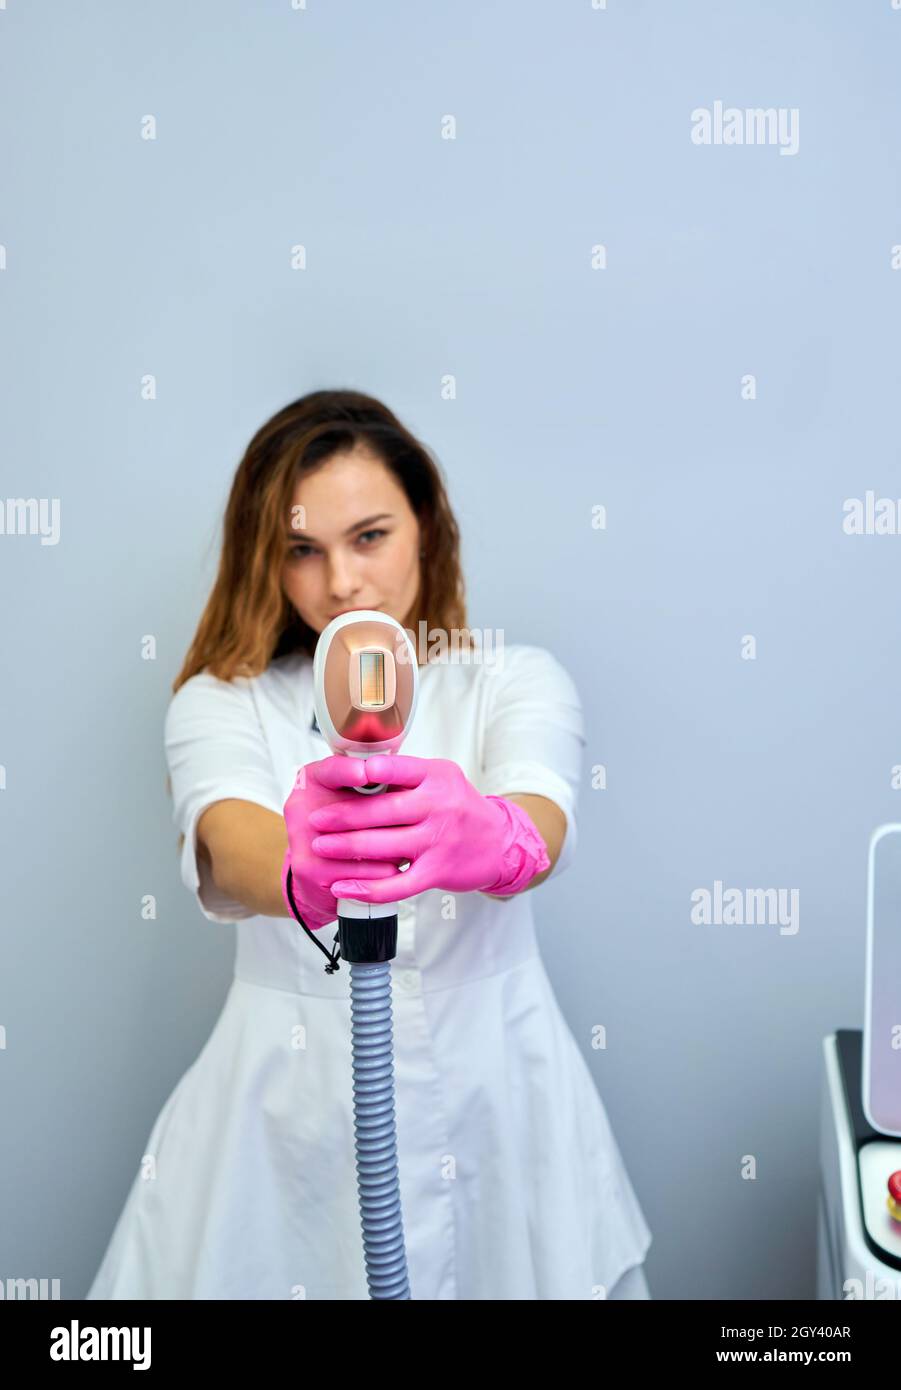 Una mujer sintoniza una máquina de depilación láser. Ella sostiene una  parte de trabajo de la depiladora en sus manos y posará para hacer una  foto. Está situado en un moderno bea